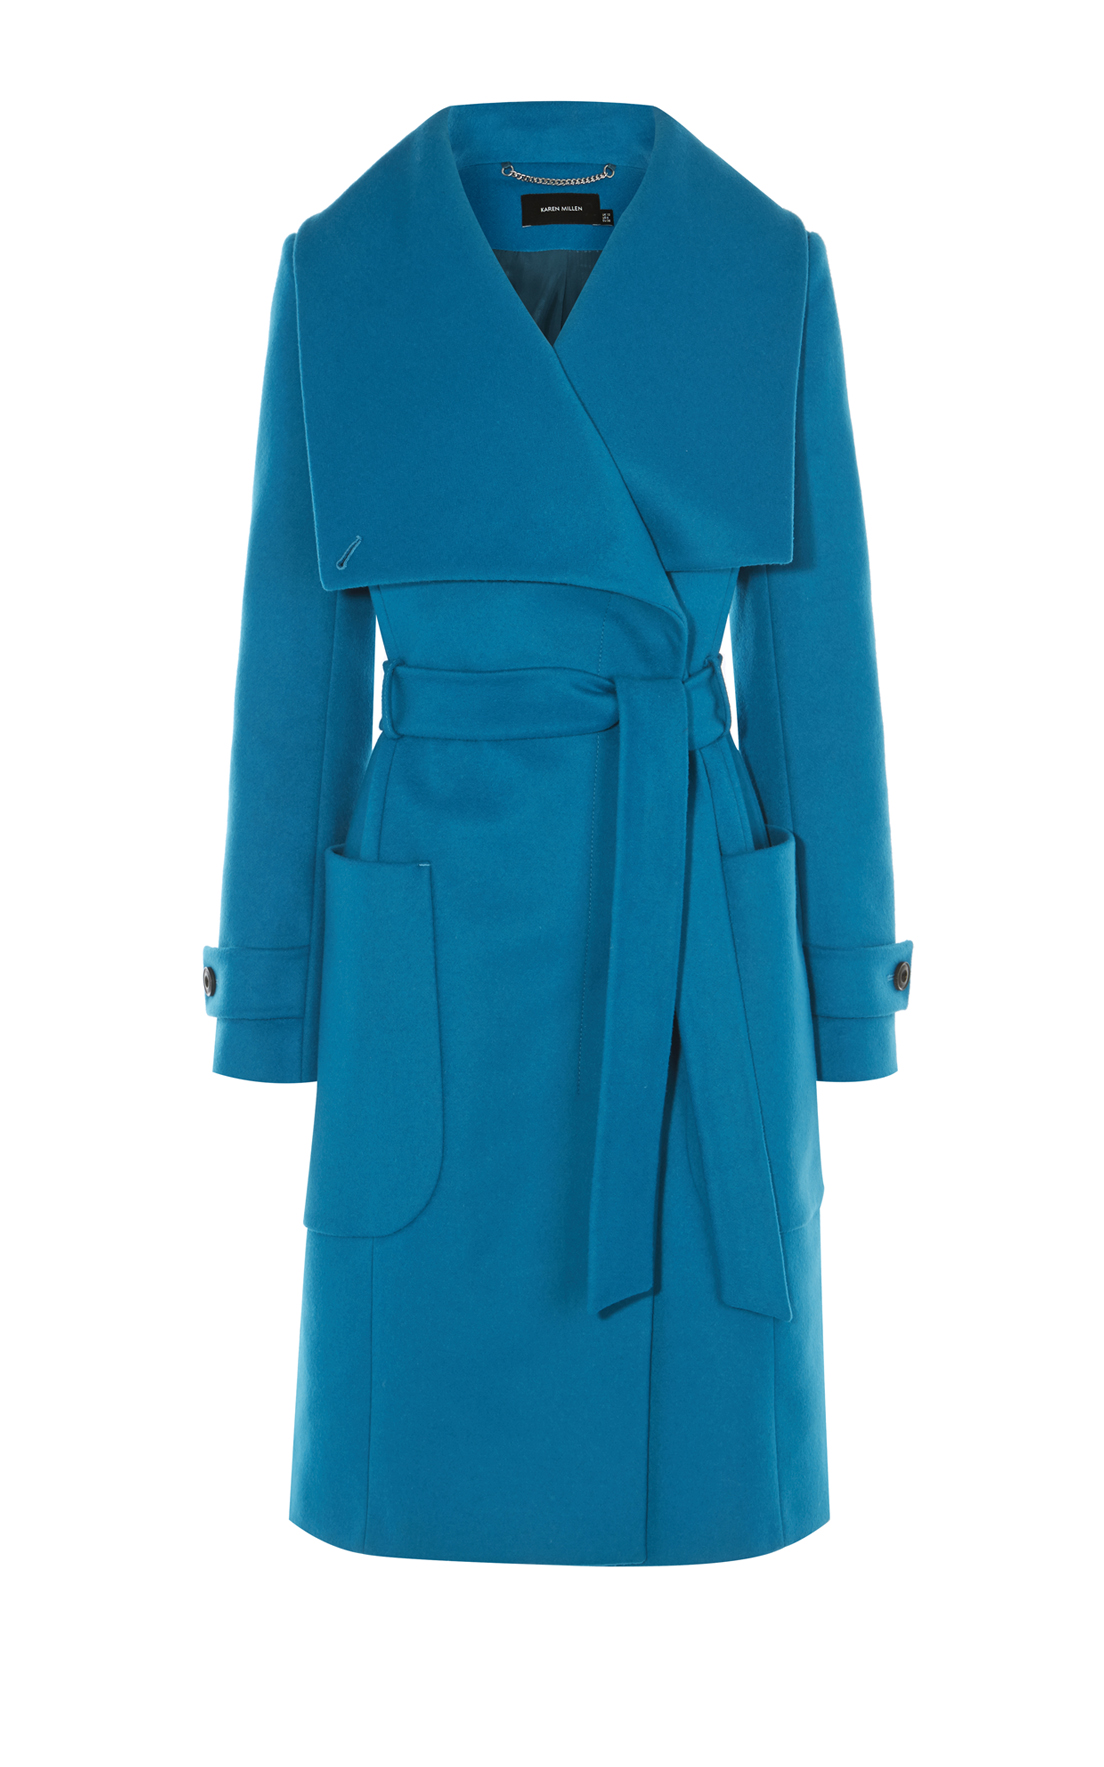 Incubus Voorschrijven Beroep Karen Millen Belted Wool Coat in Blue — UFO No More